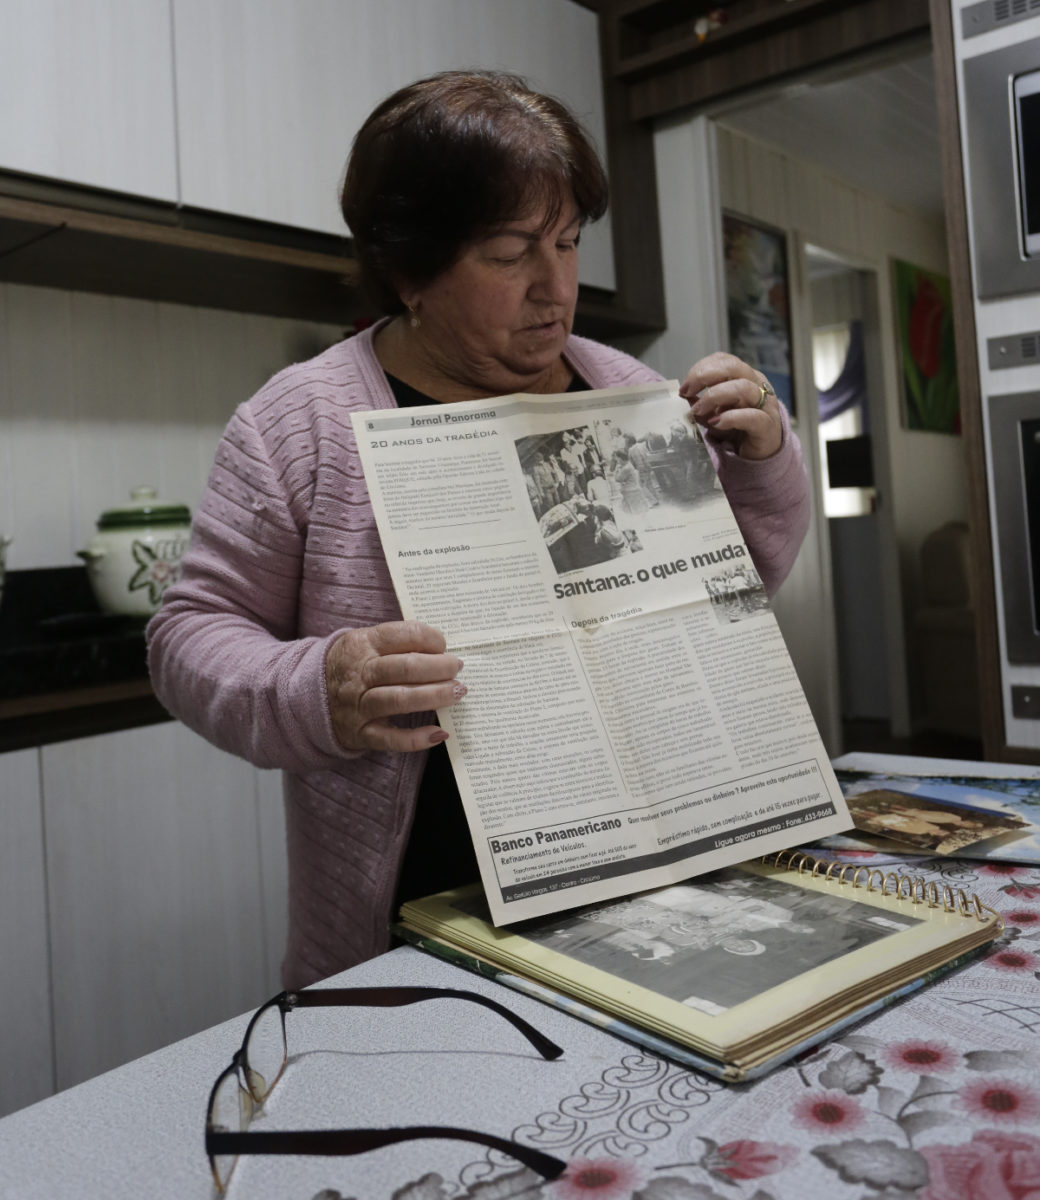 Maria de Fátima Goulart é uma senhora na faixa dos 60 anos, ela segura um jornal nas mãos